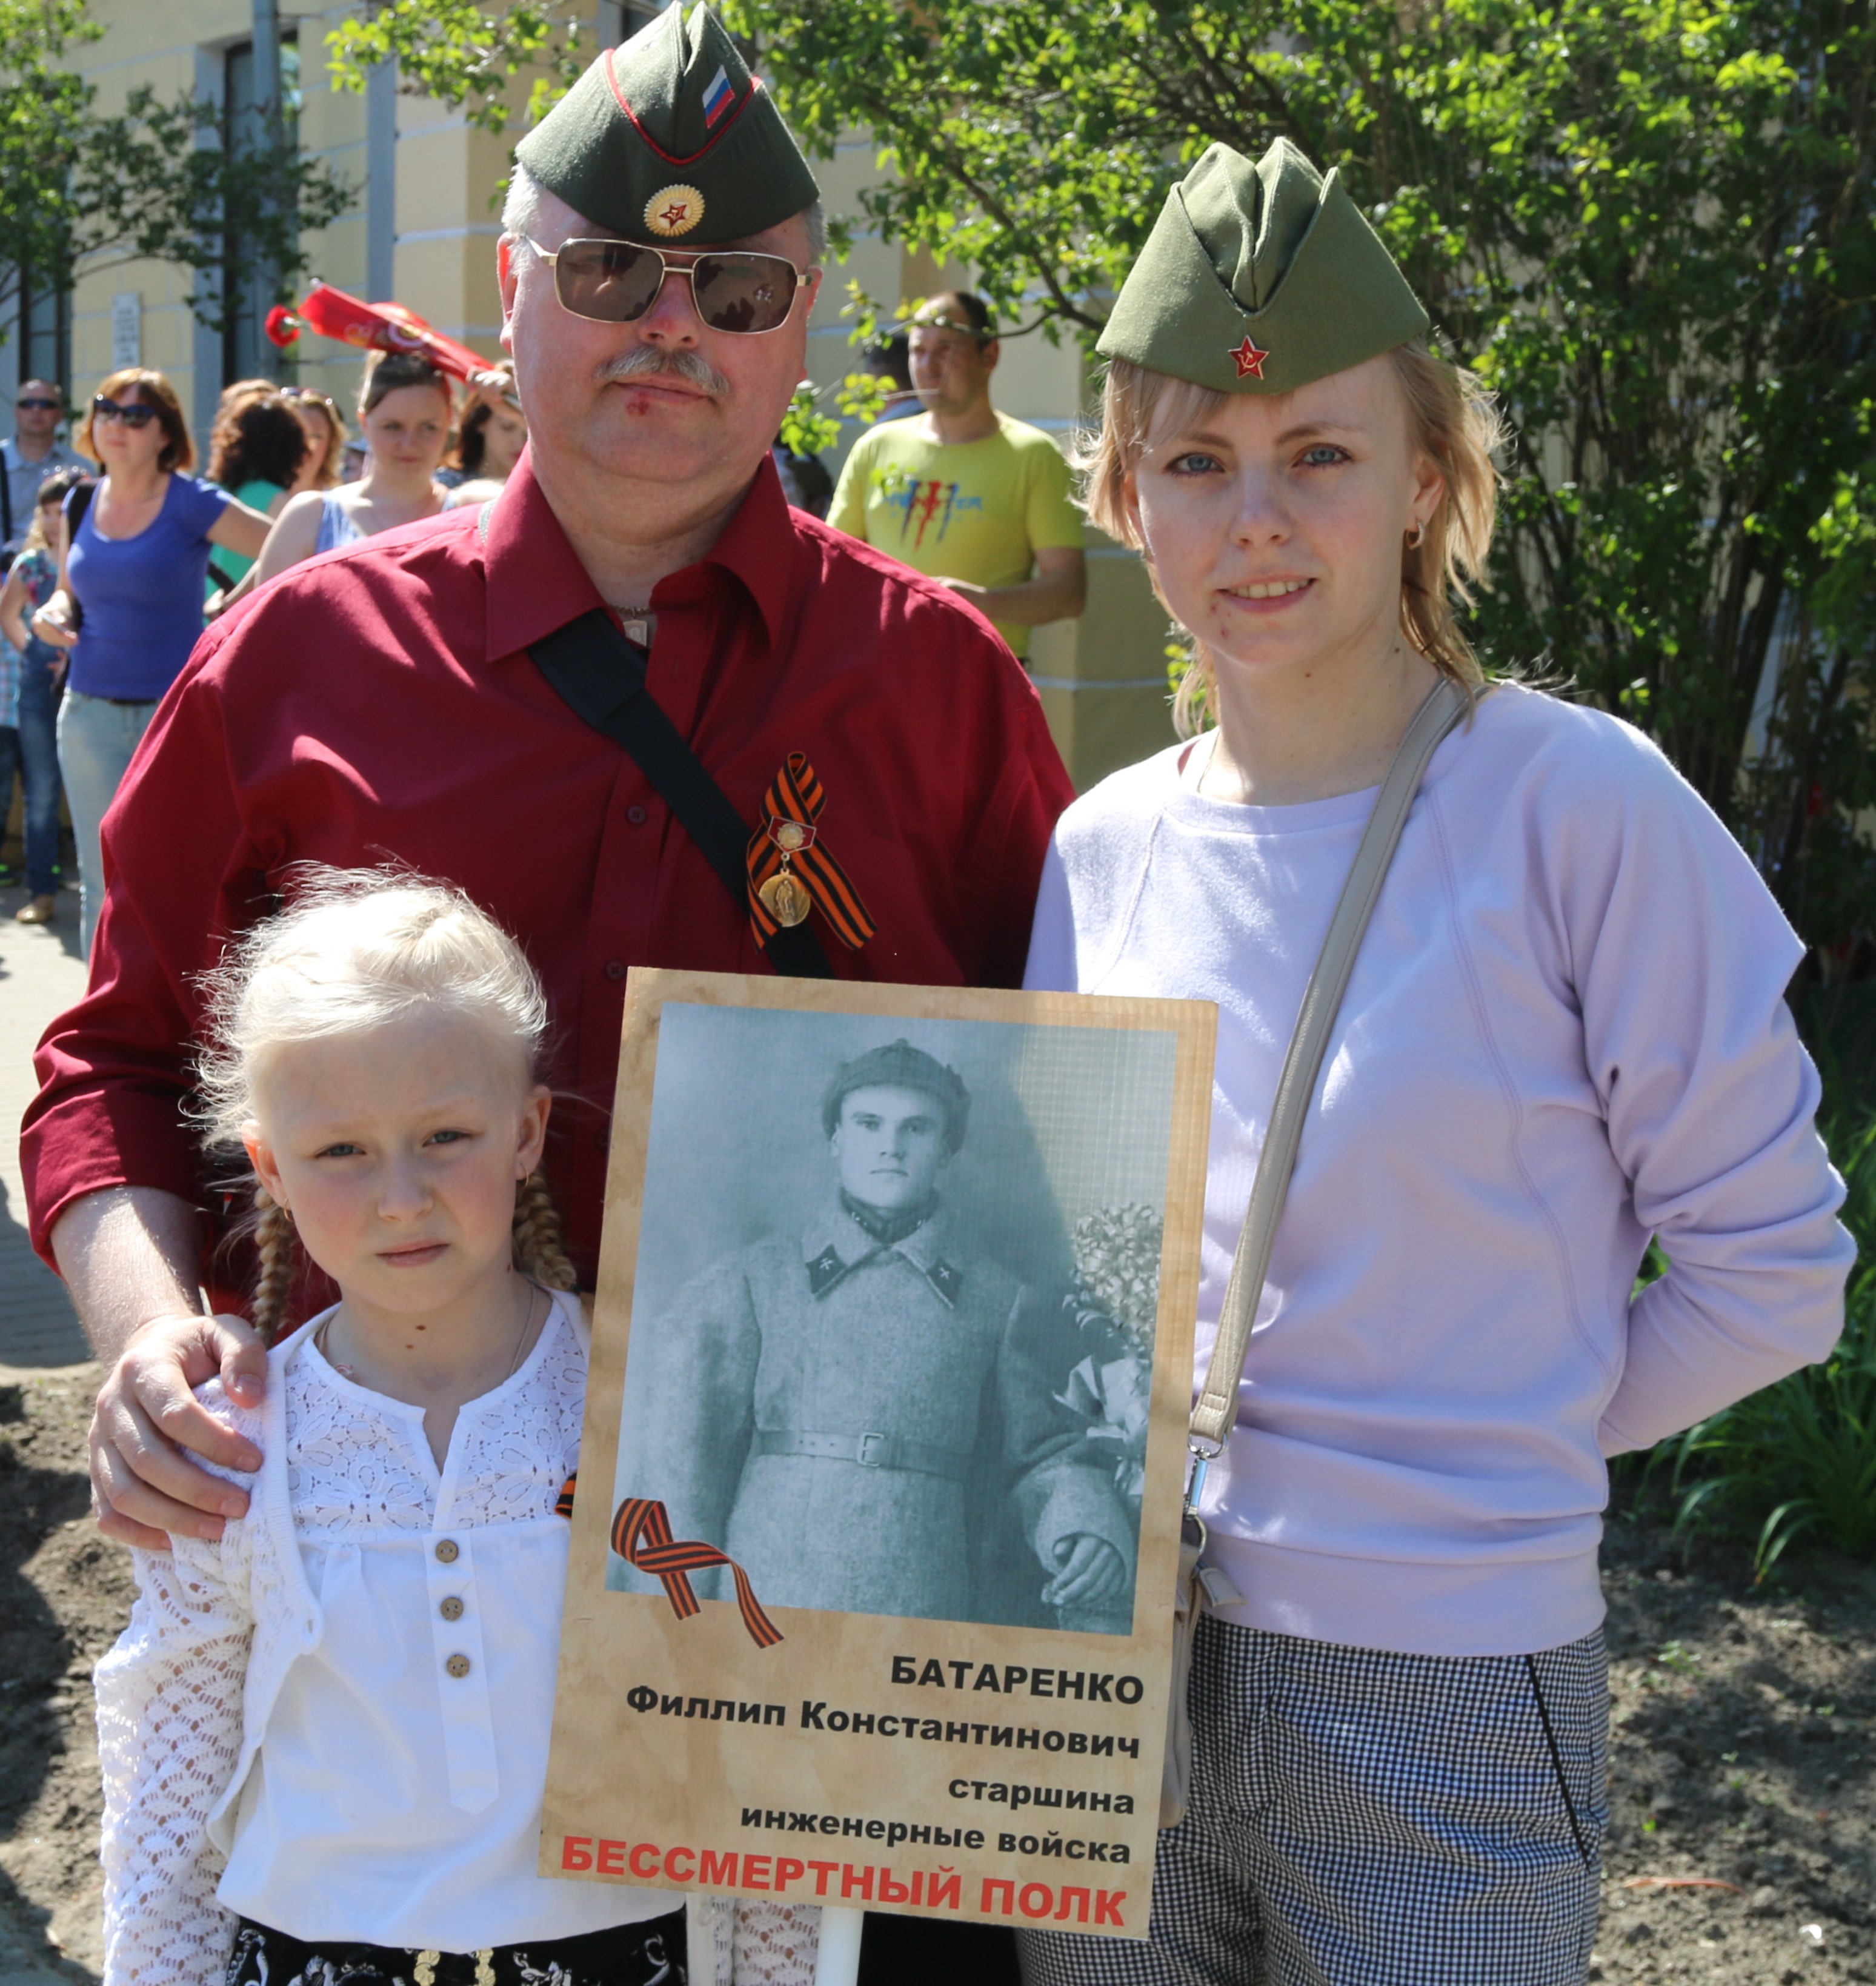 Петрова Марьяна с семьей с портретом Батаренко Ф.К.